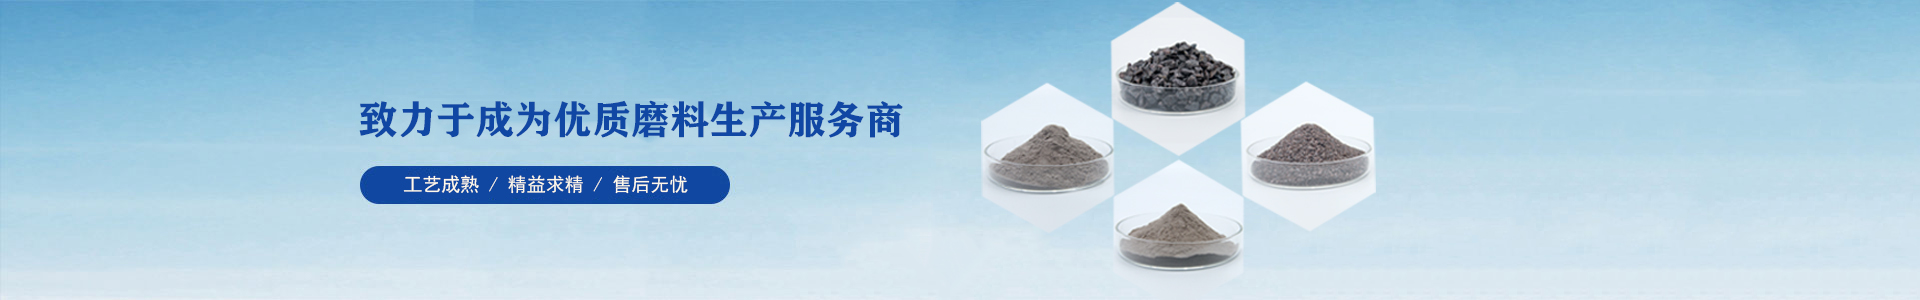 生产设备-河南尊龙凯时官方网站研磨科技有限公司 - 